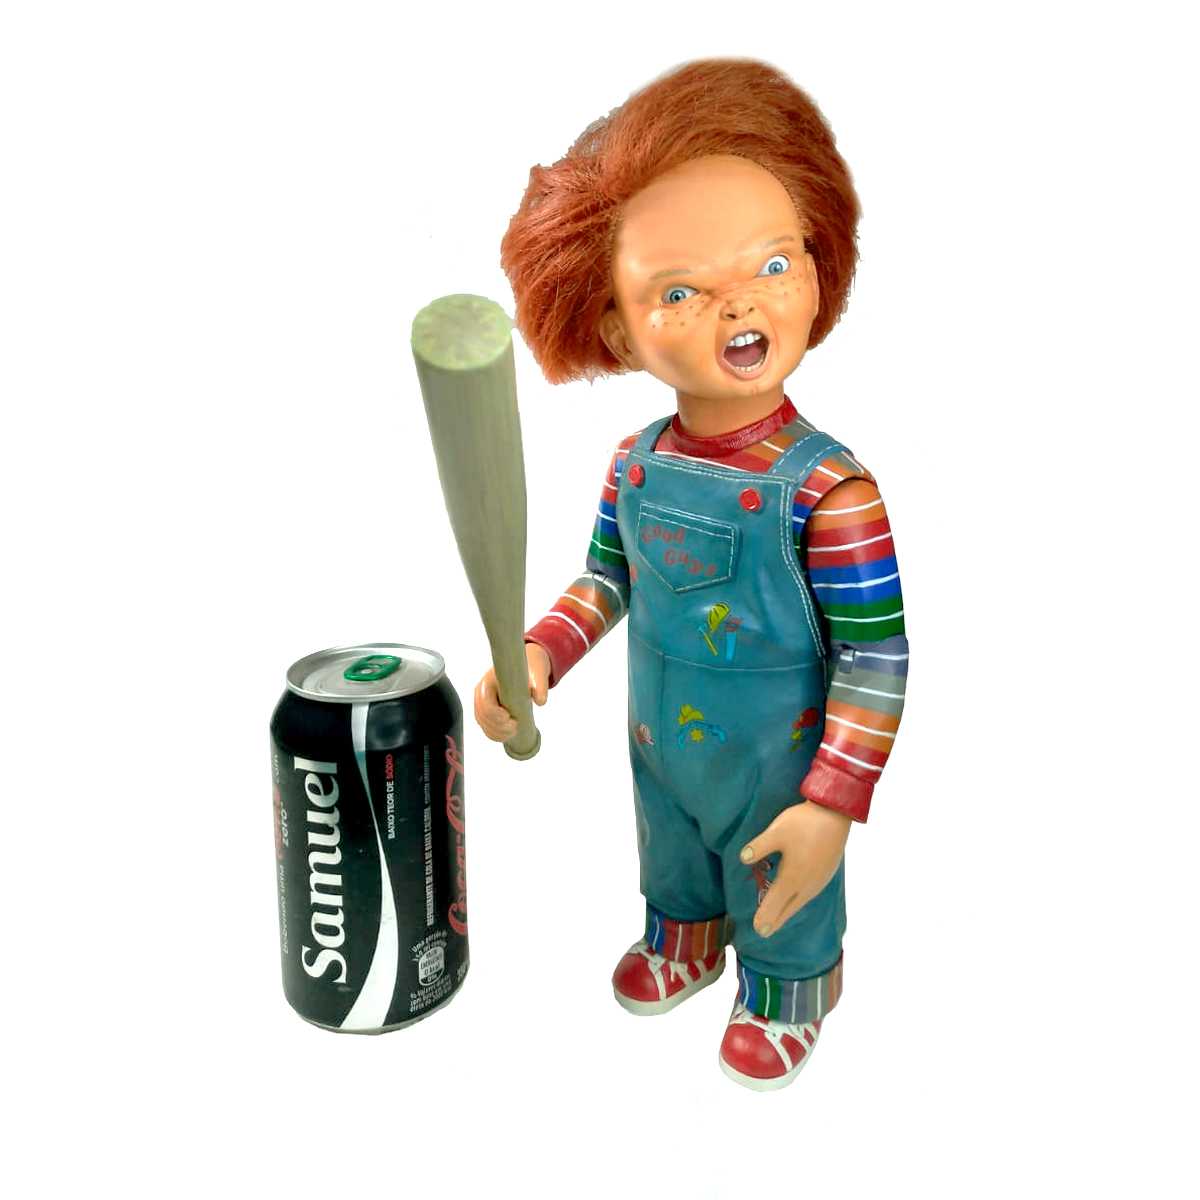 Neca Chucky (Childs Play 3) Brinquedo Assassino Aberto Sem Embalagem conforme as fotos